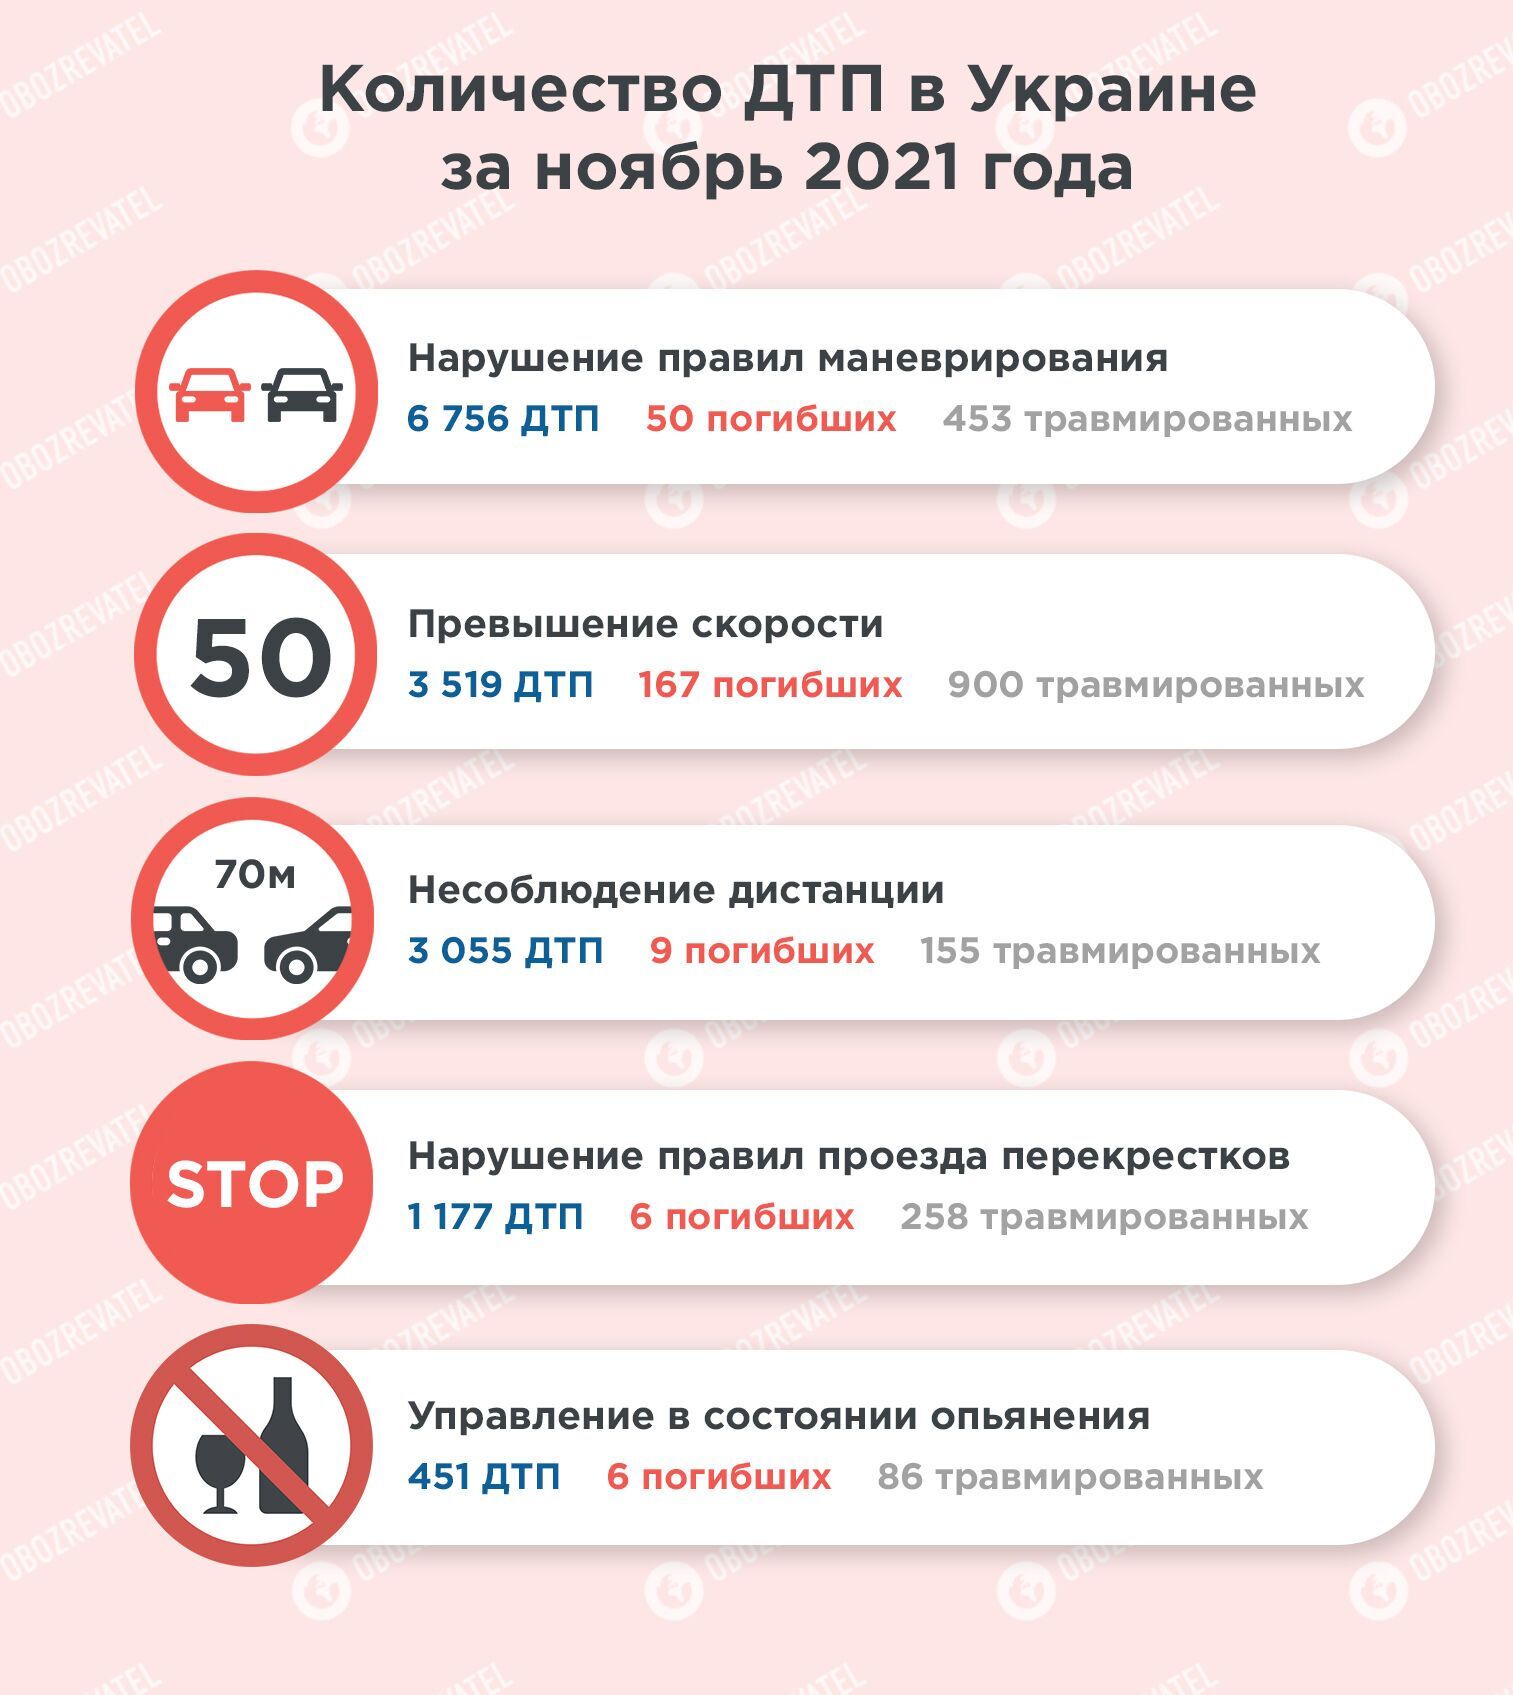 У листопаді 2021 року в Україні ДТП найчастіше відбувалися через порушення правил маневрування